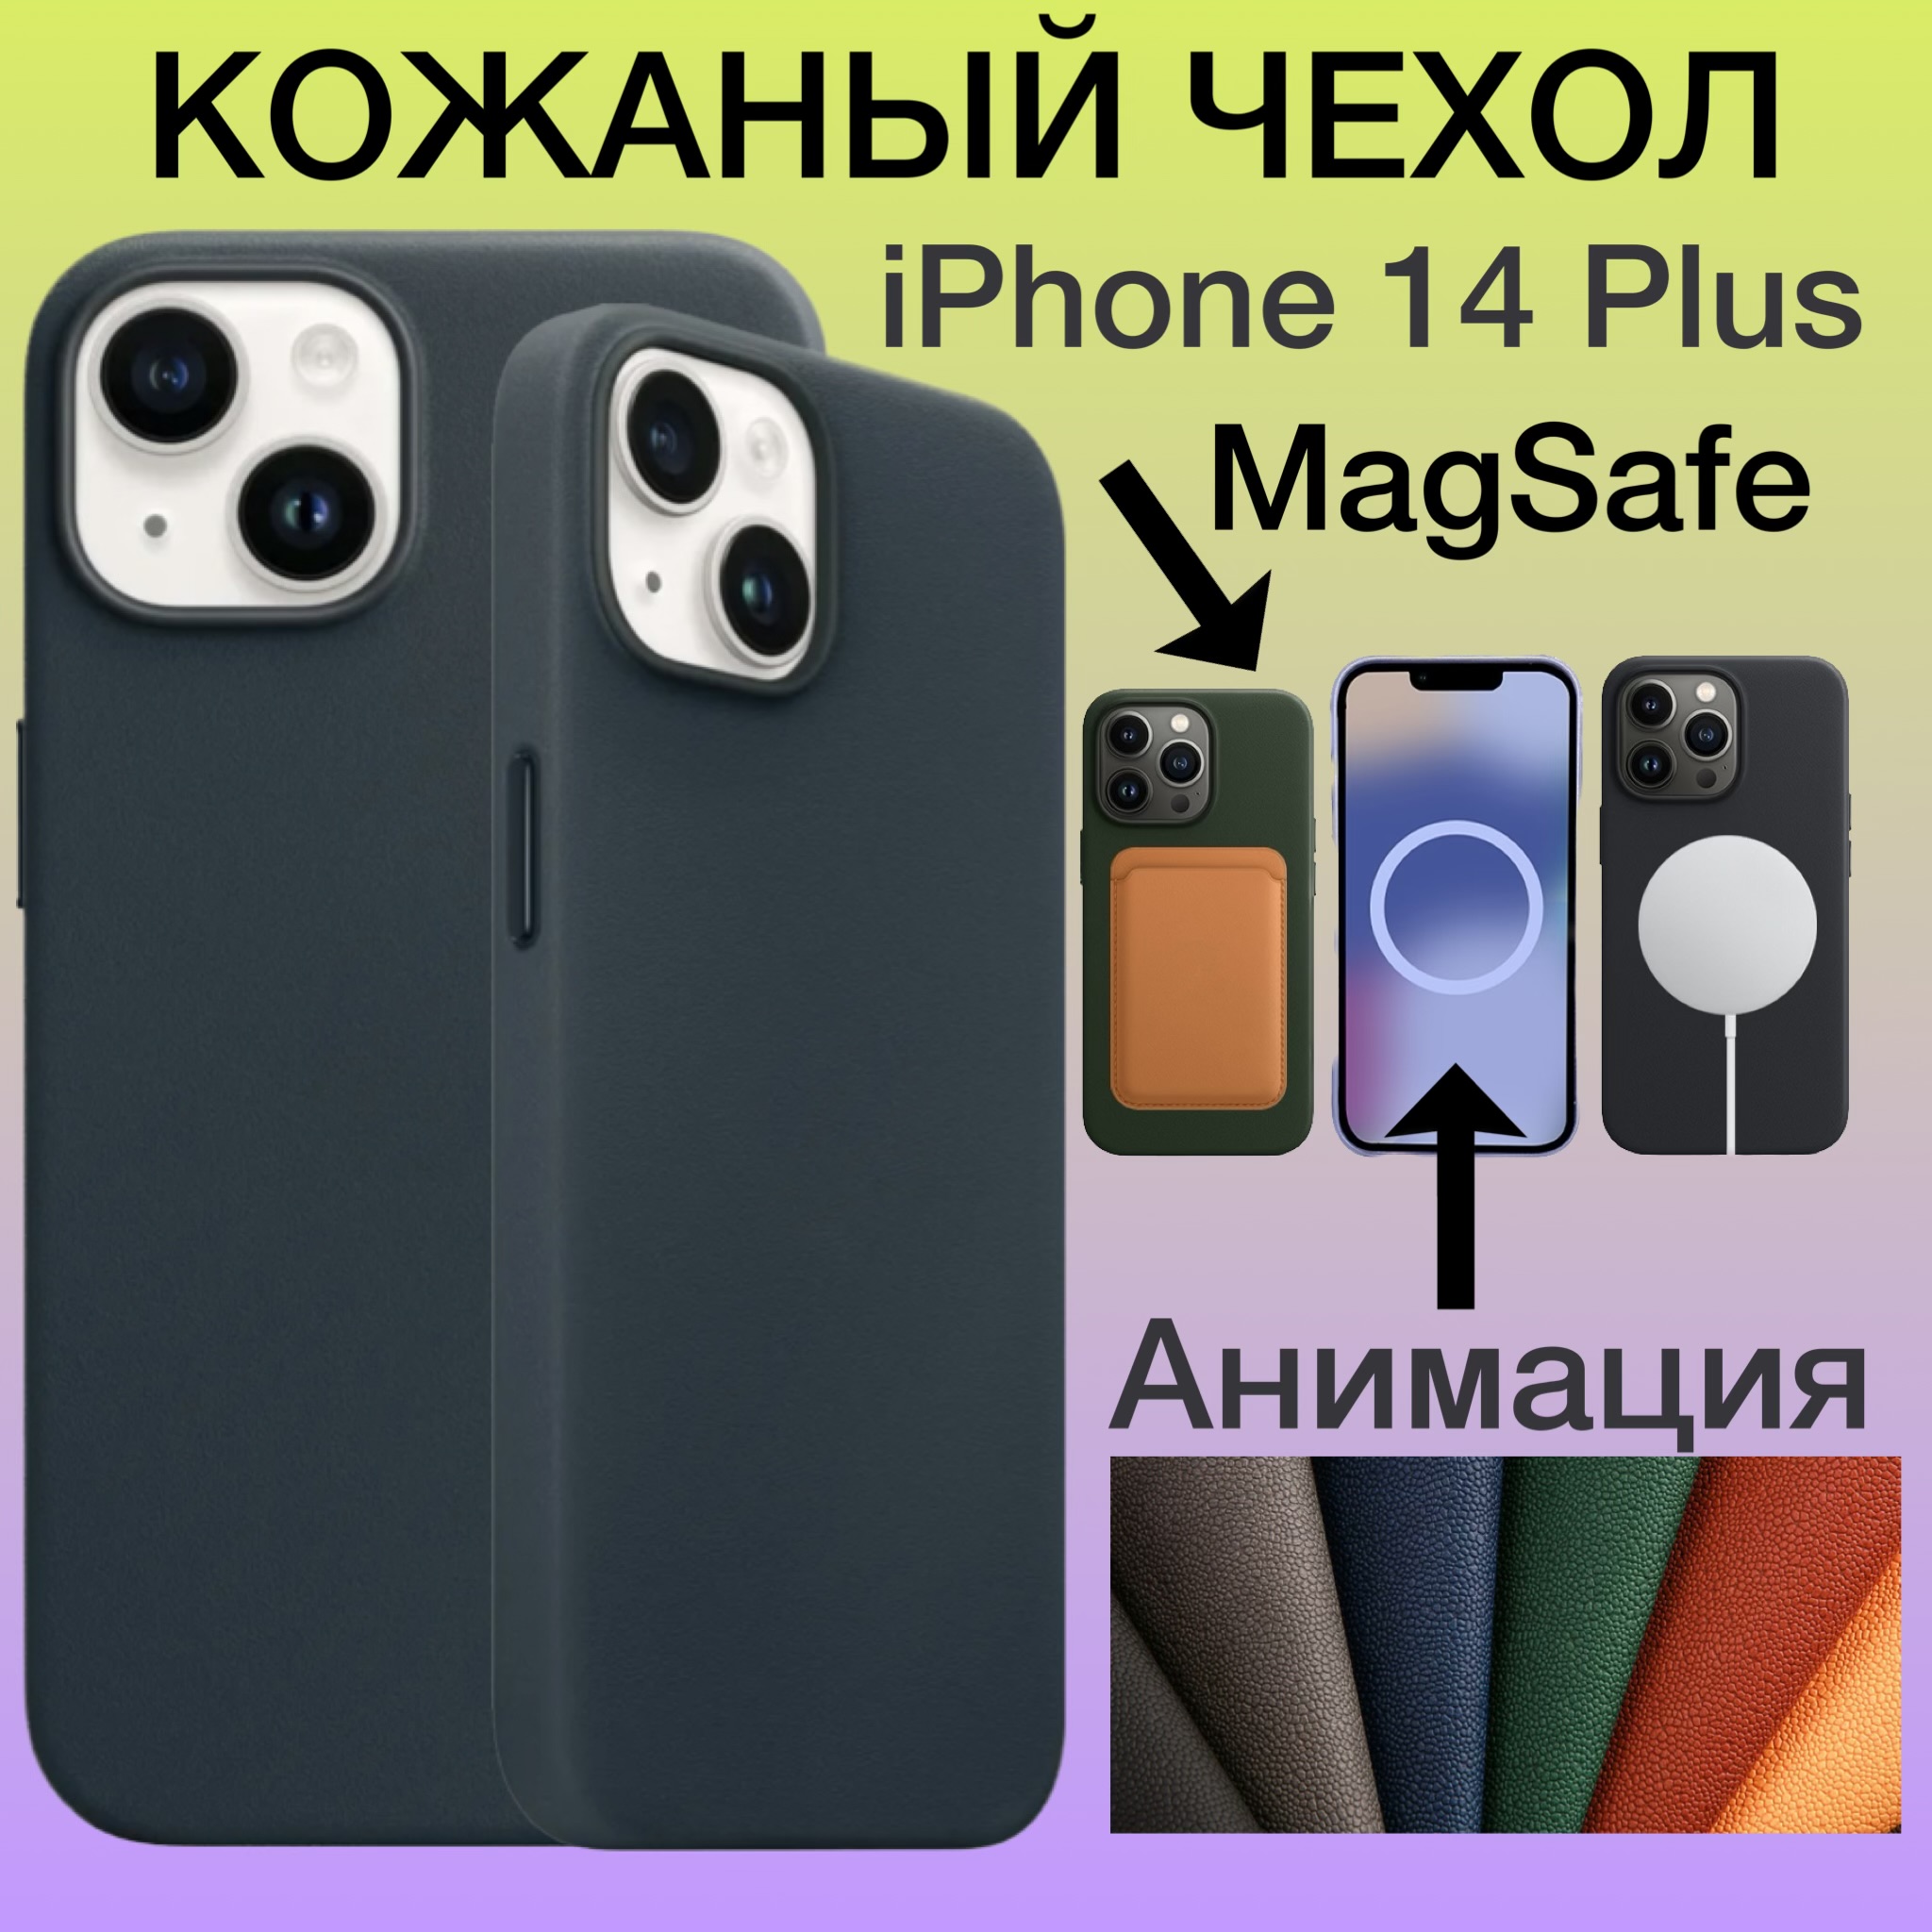 Кожаный чехол на iPhone 14 Plus с MagSafe и Анимацией для Айфон 14 Плюс цвет зеленый